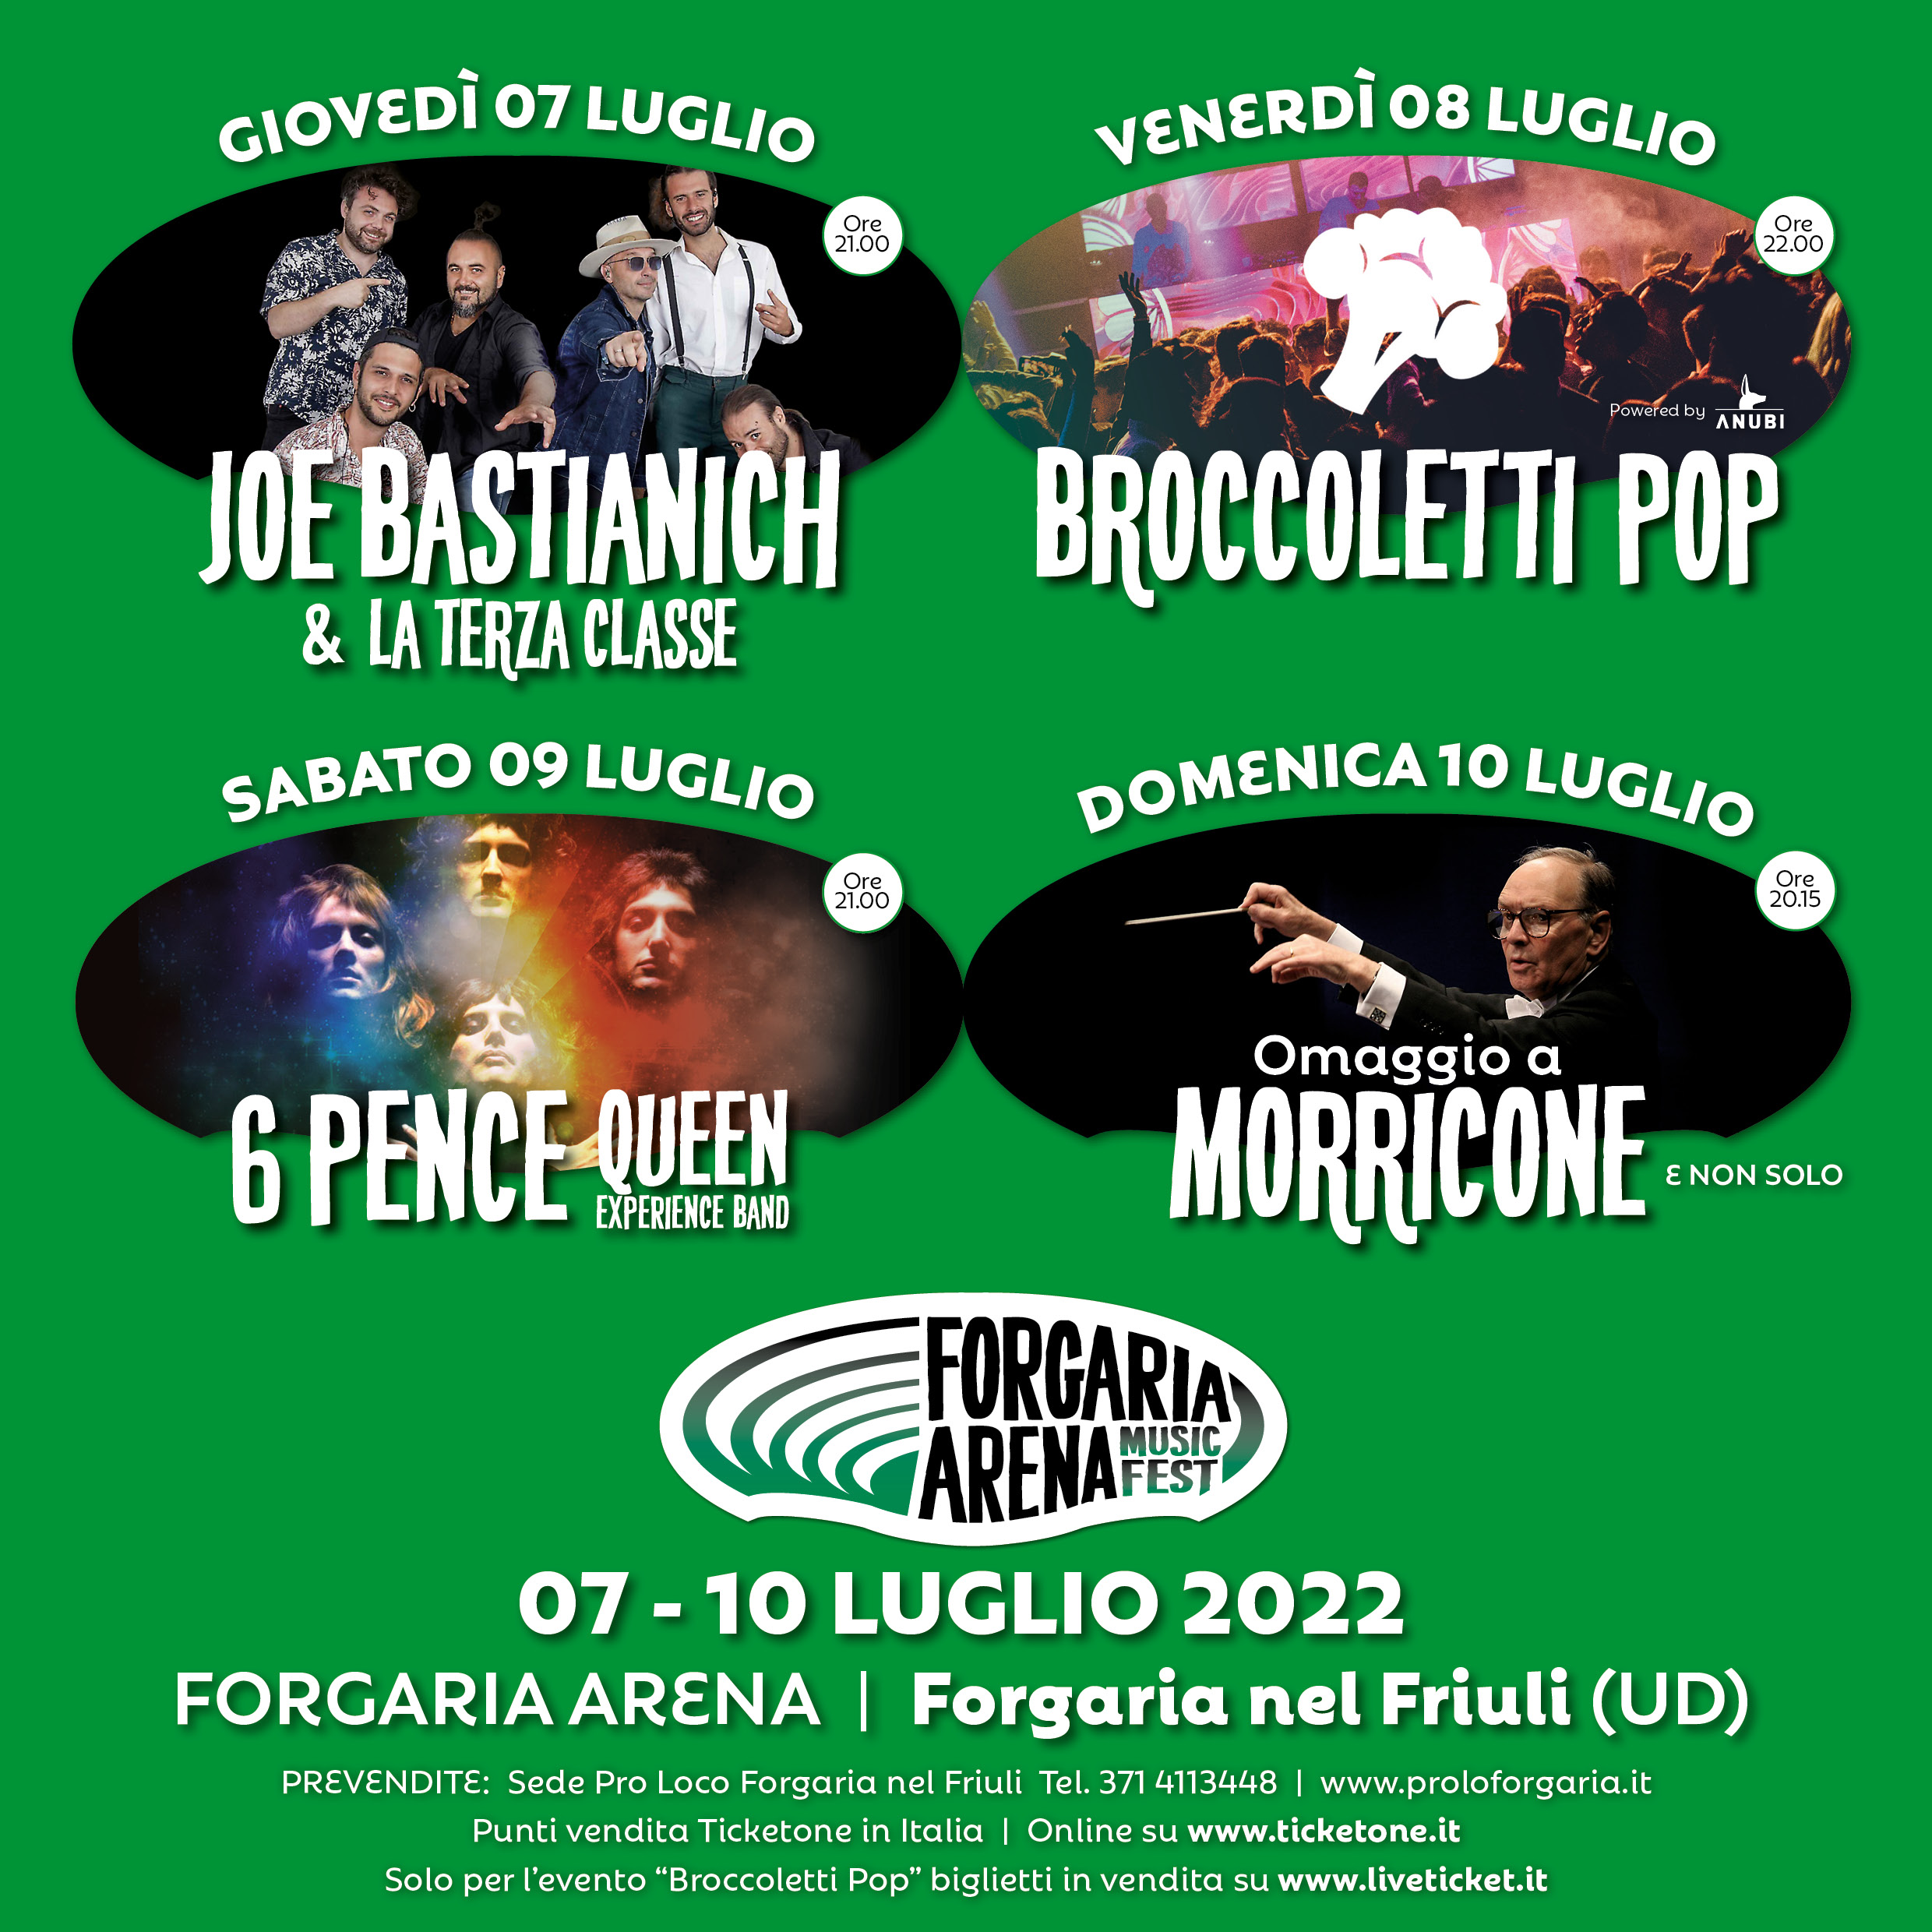 Forgaria Arena Music Fest 2022